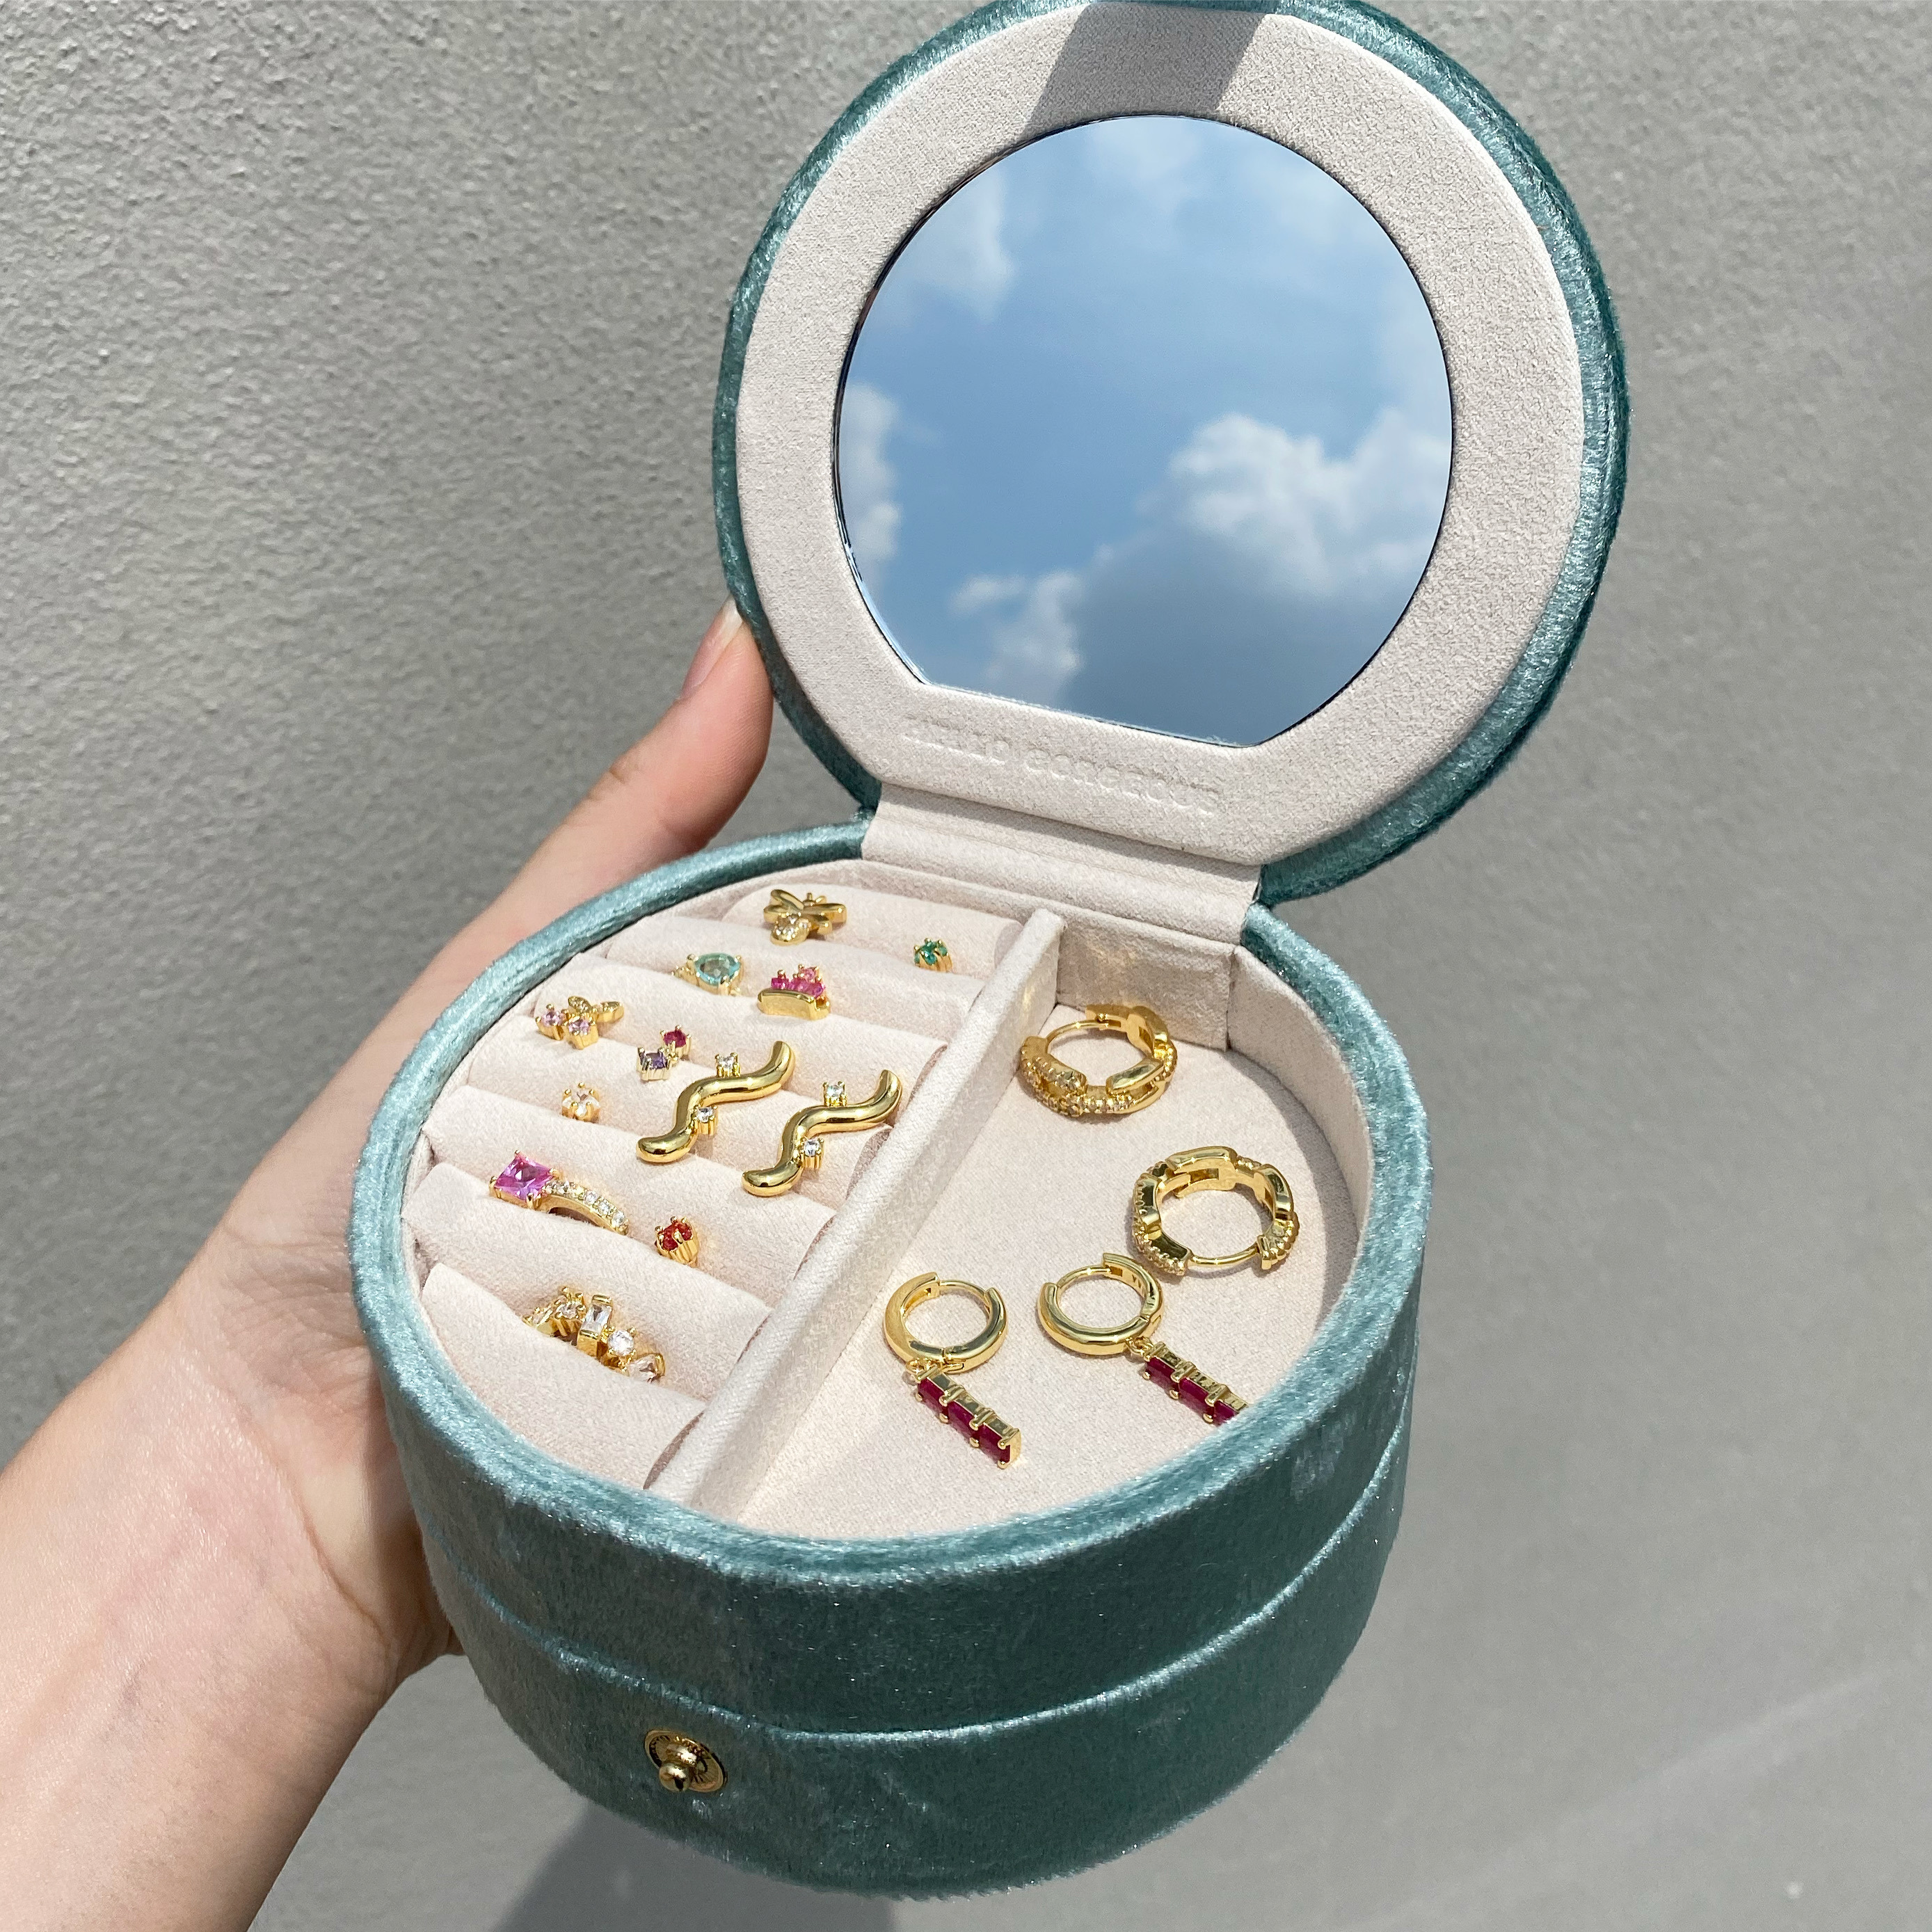 YVIS cake jewelry case กล่องใส่เครื่องประดับ